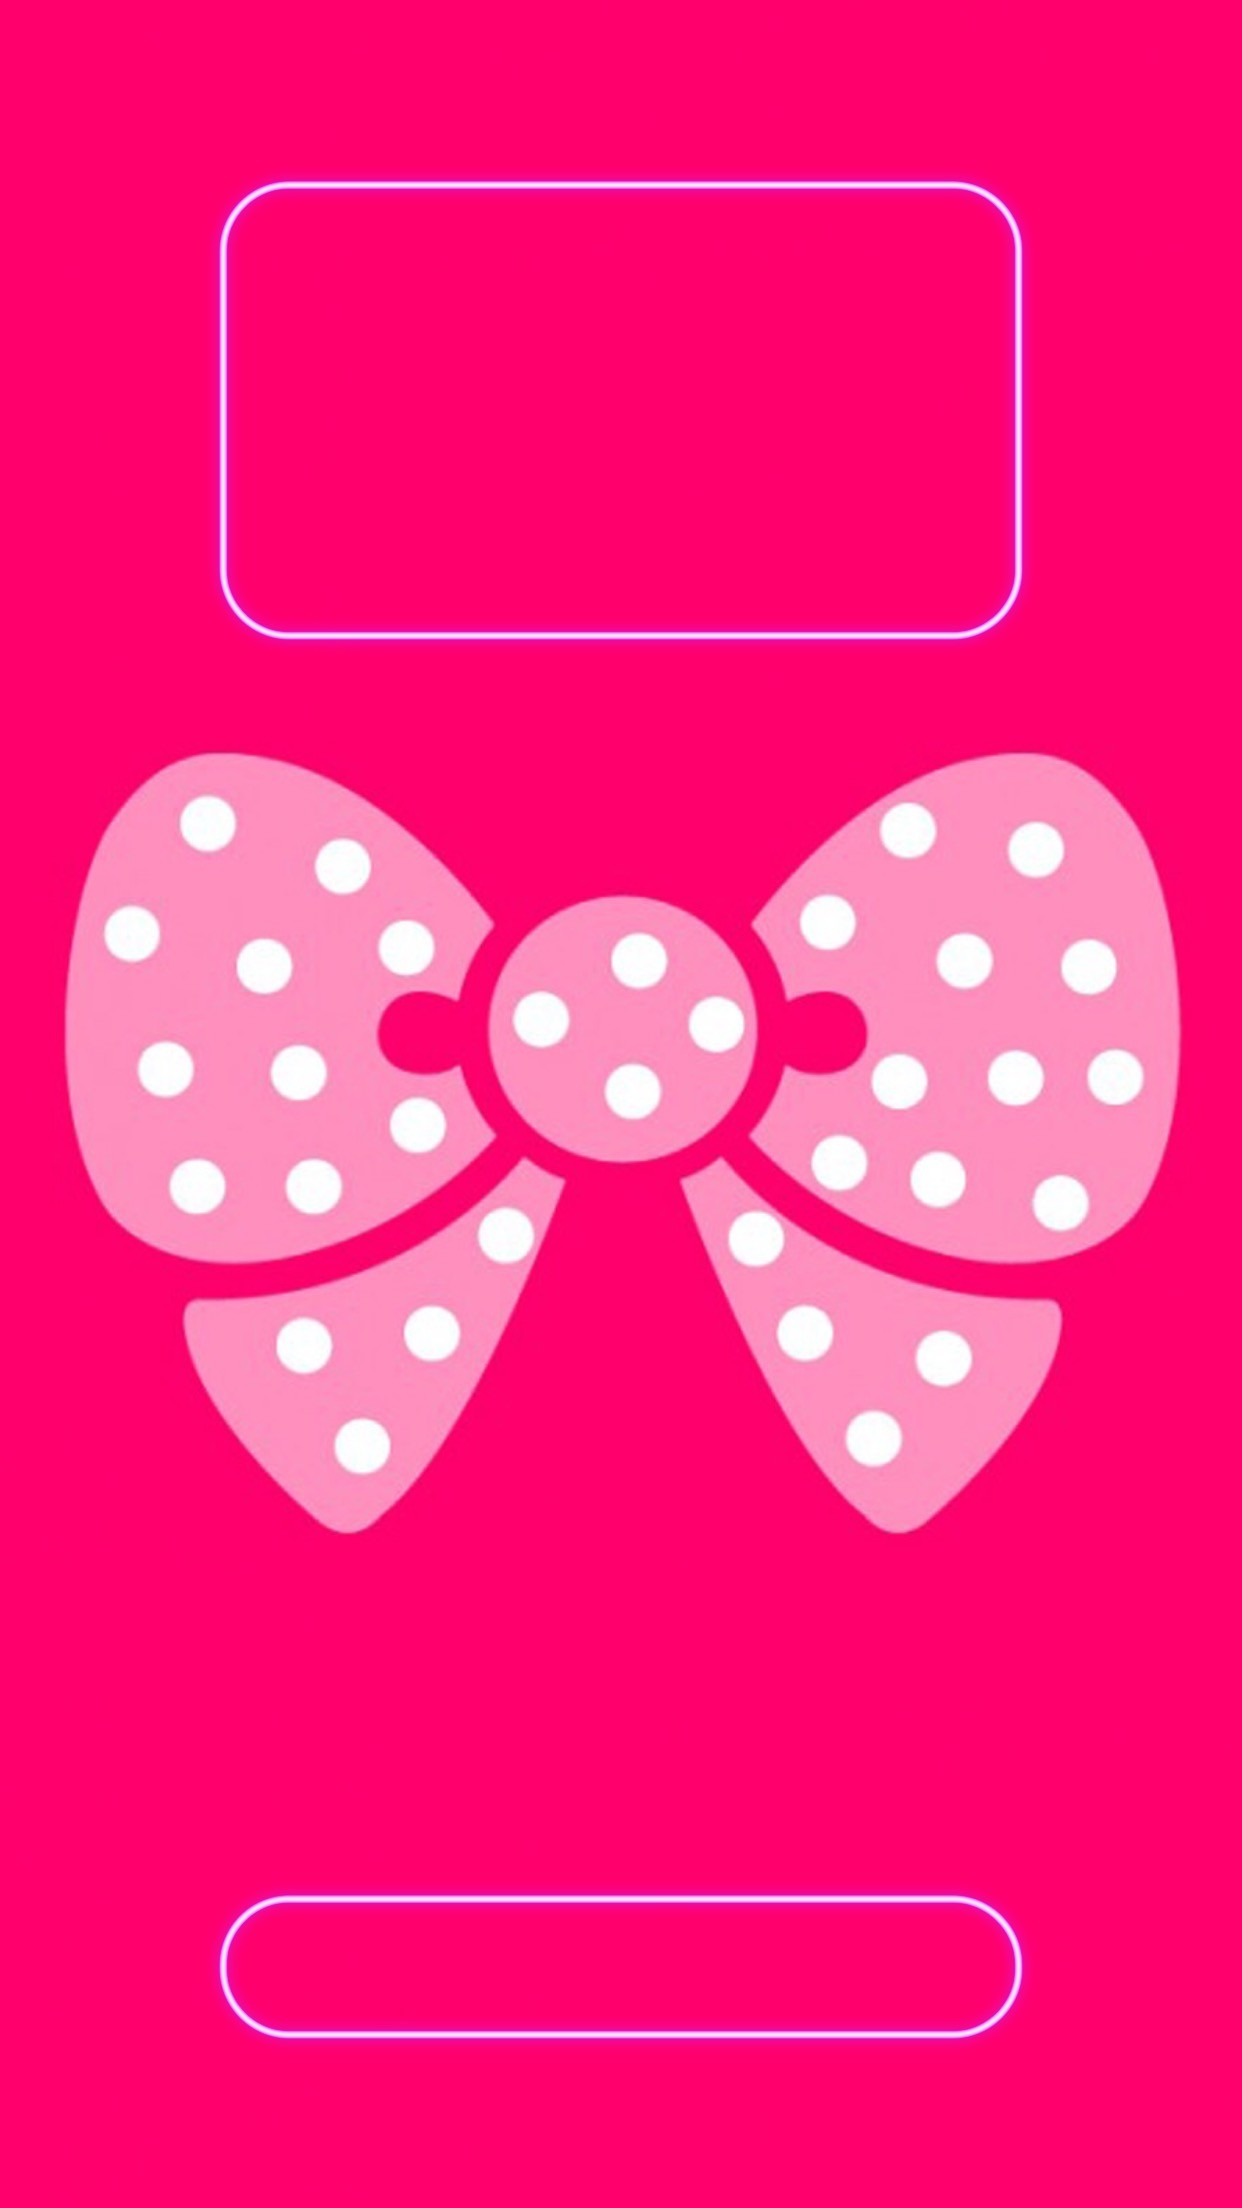 1242x2208 Screen wallpaper Â· ââTAP AND GET THE FREE APP! Lockscreens Art Creative  Pink Spots For Girls